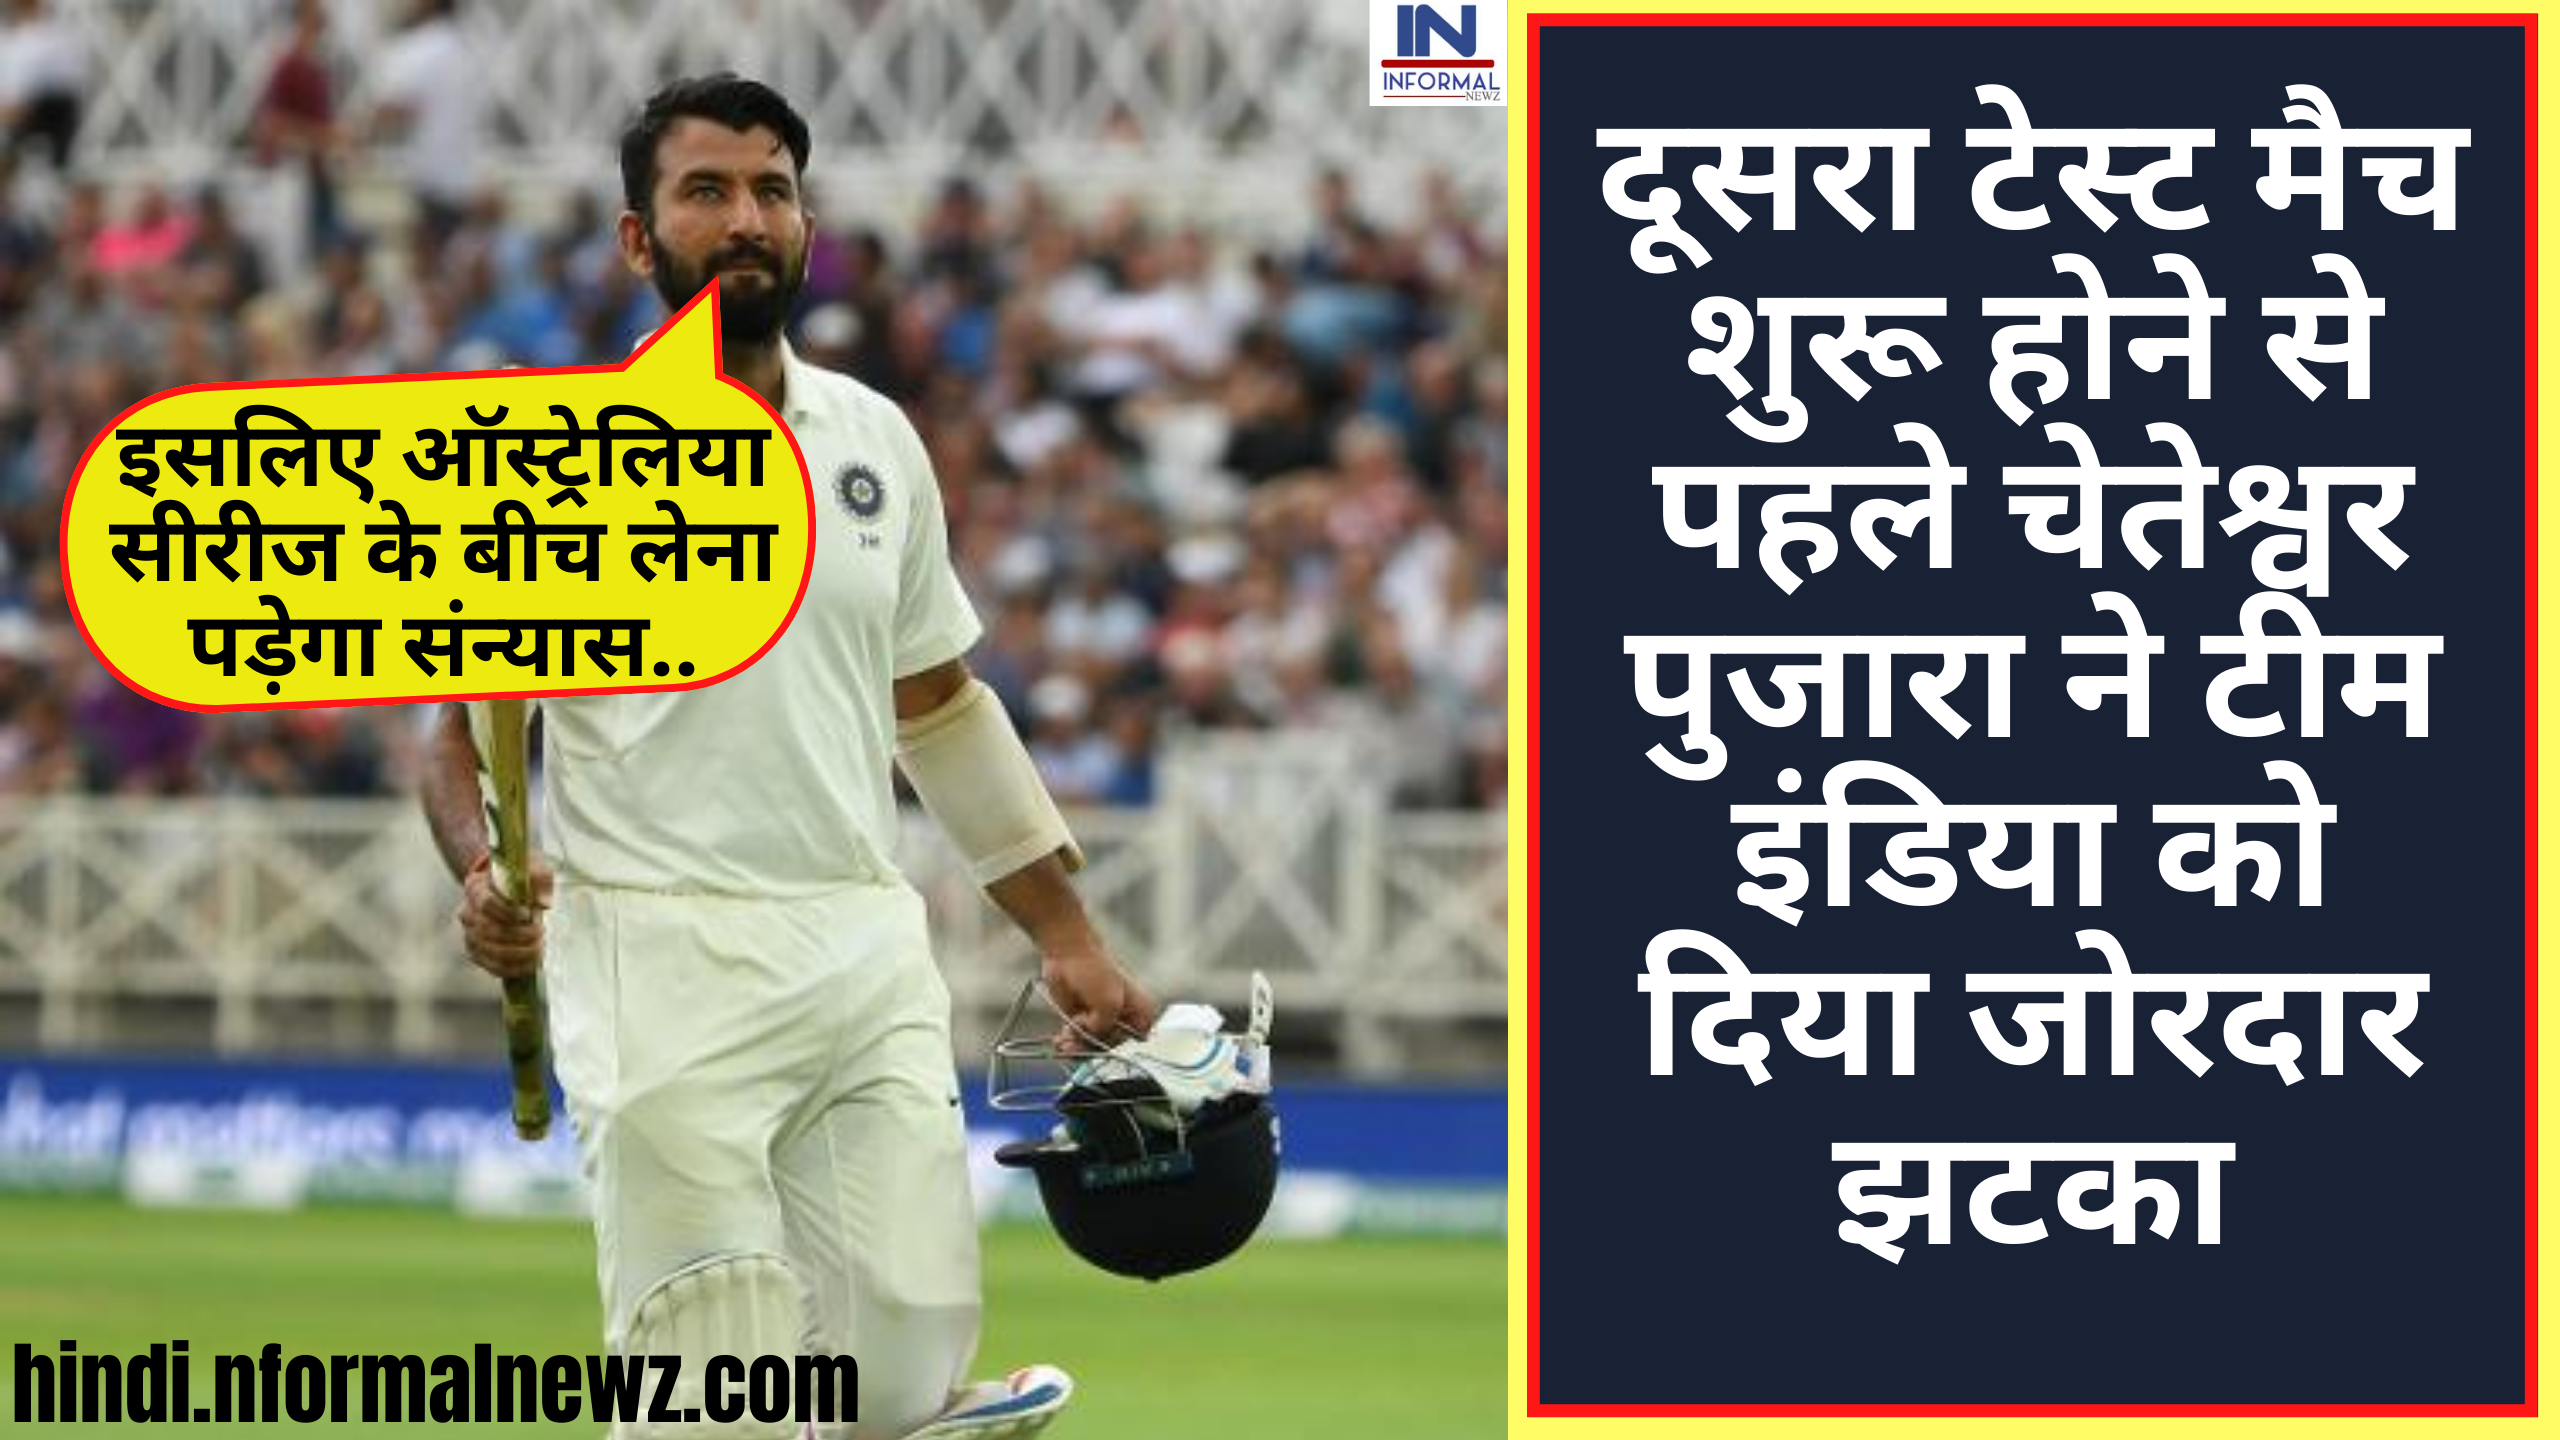 IND vs AUS 2nd Test match: दूसरा टेस्ट मैच शुरू होने से पहले चेतेश्वर पुजारा ने टीम इंडिया को दिया जोरदार झटका, ऑस्ट्रेलिया सीरीज के बीच लेंगे संन्यास, फैंस हुए शॉक्ड